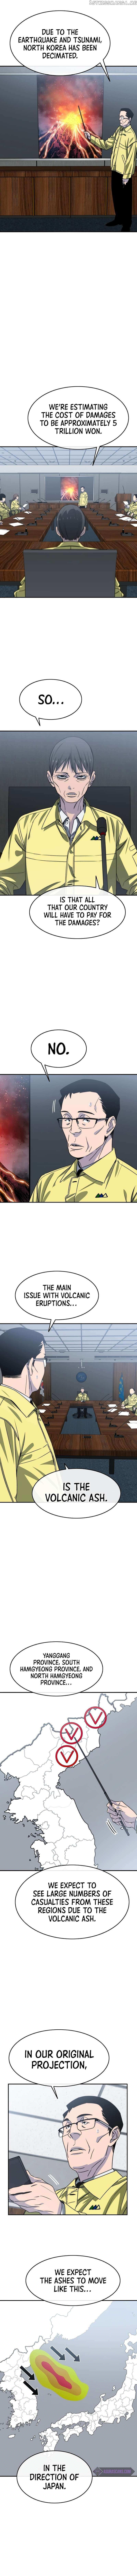 Existence Chapter 48 page 5 - Mangakakalot